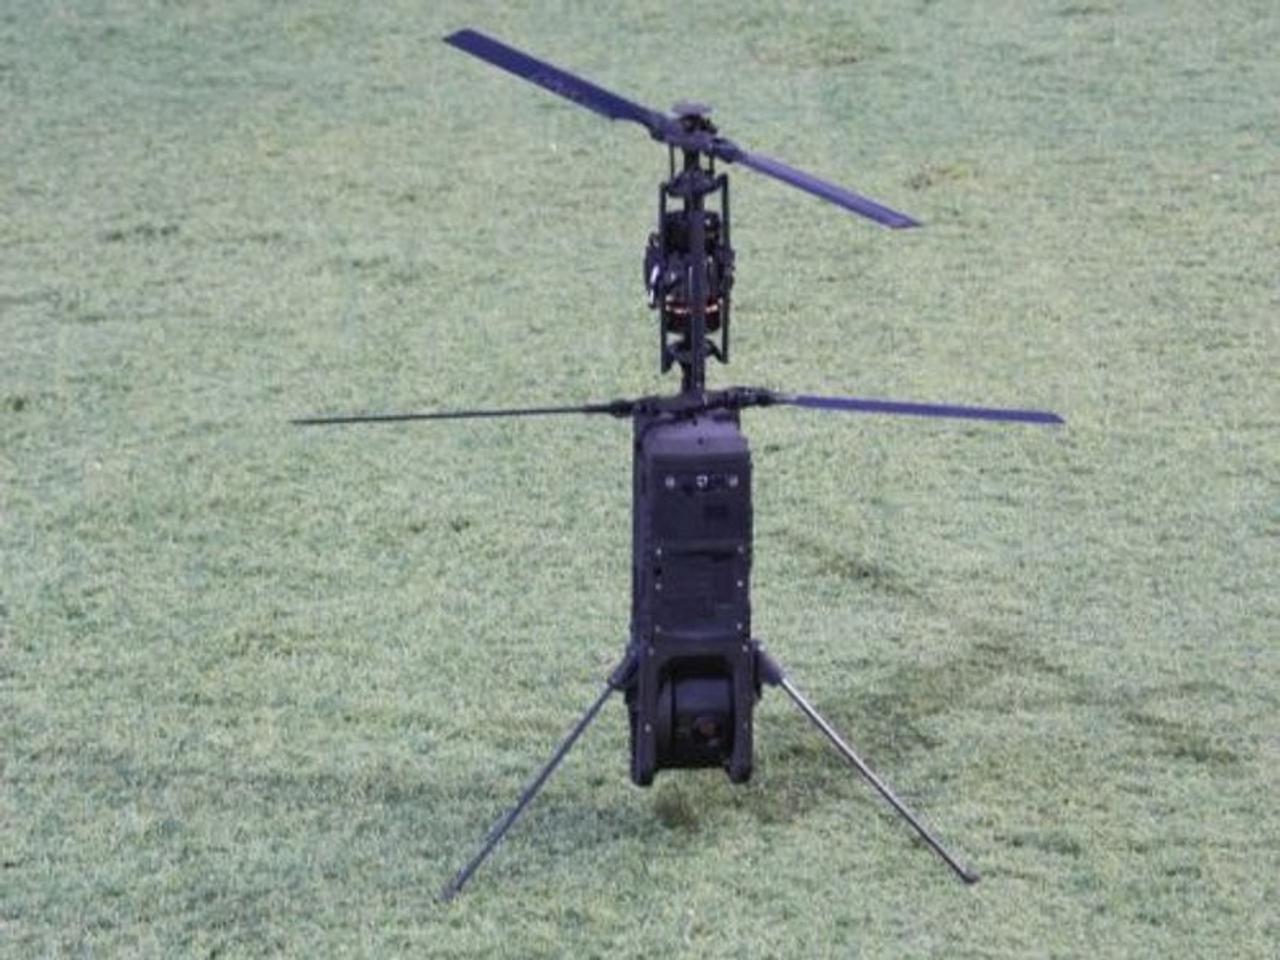 От создателей систем ПВО С-300, С-400 и С-500. «Алмаз-Антей» запустил в производство многофункциональный беспилотник с управлением со смартфона